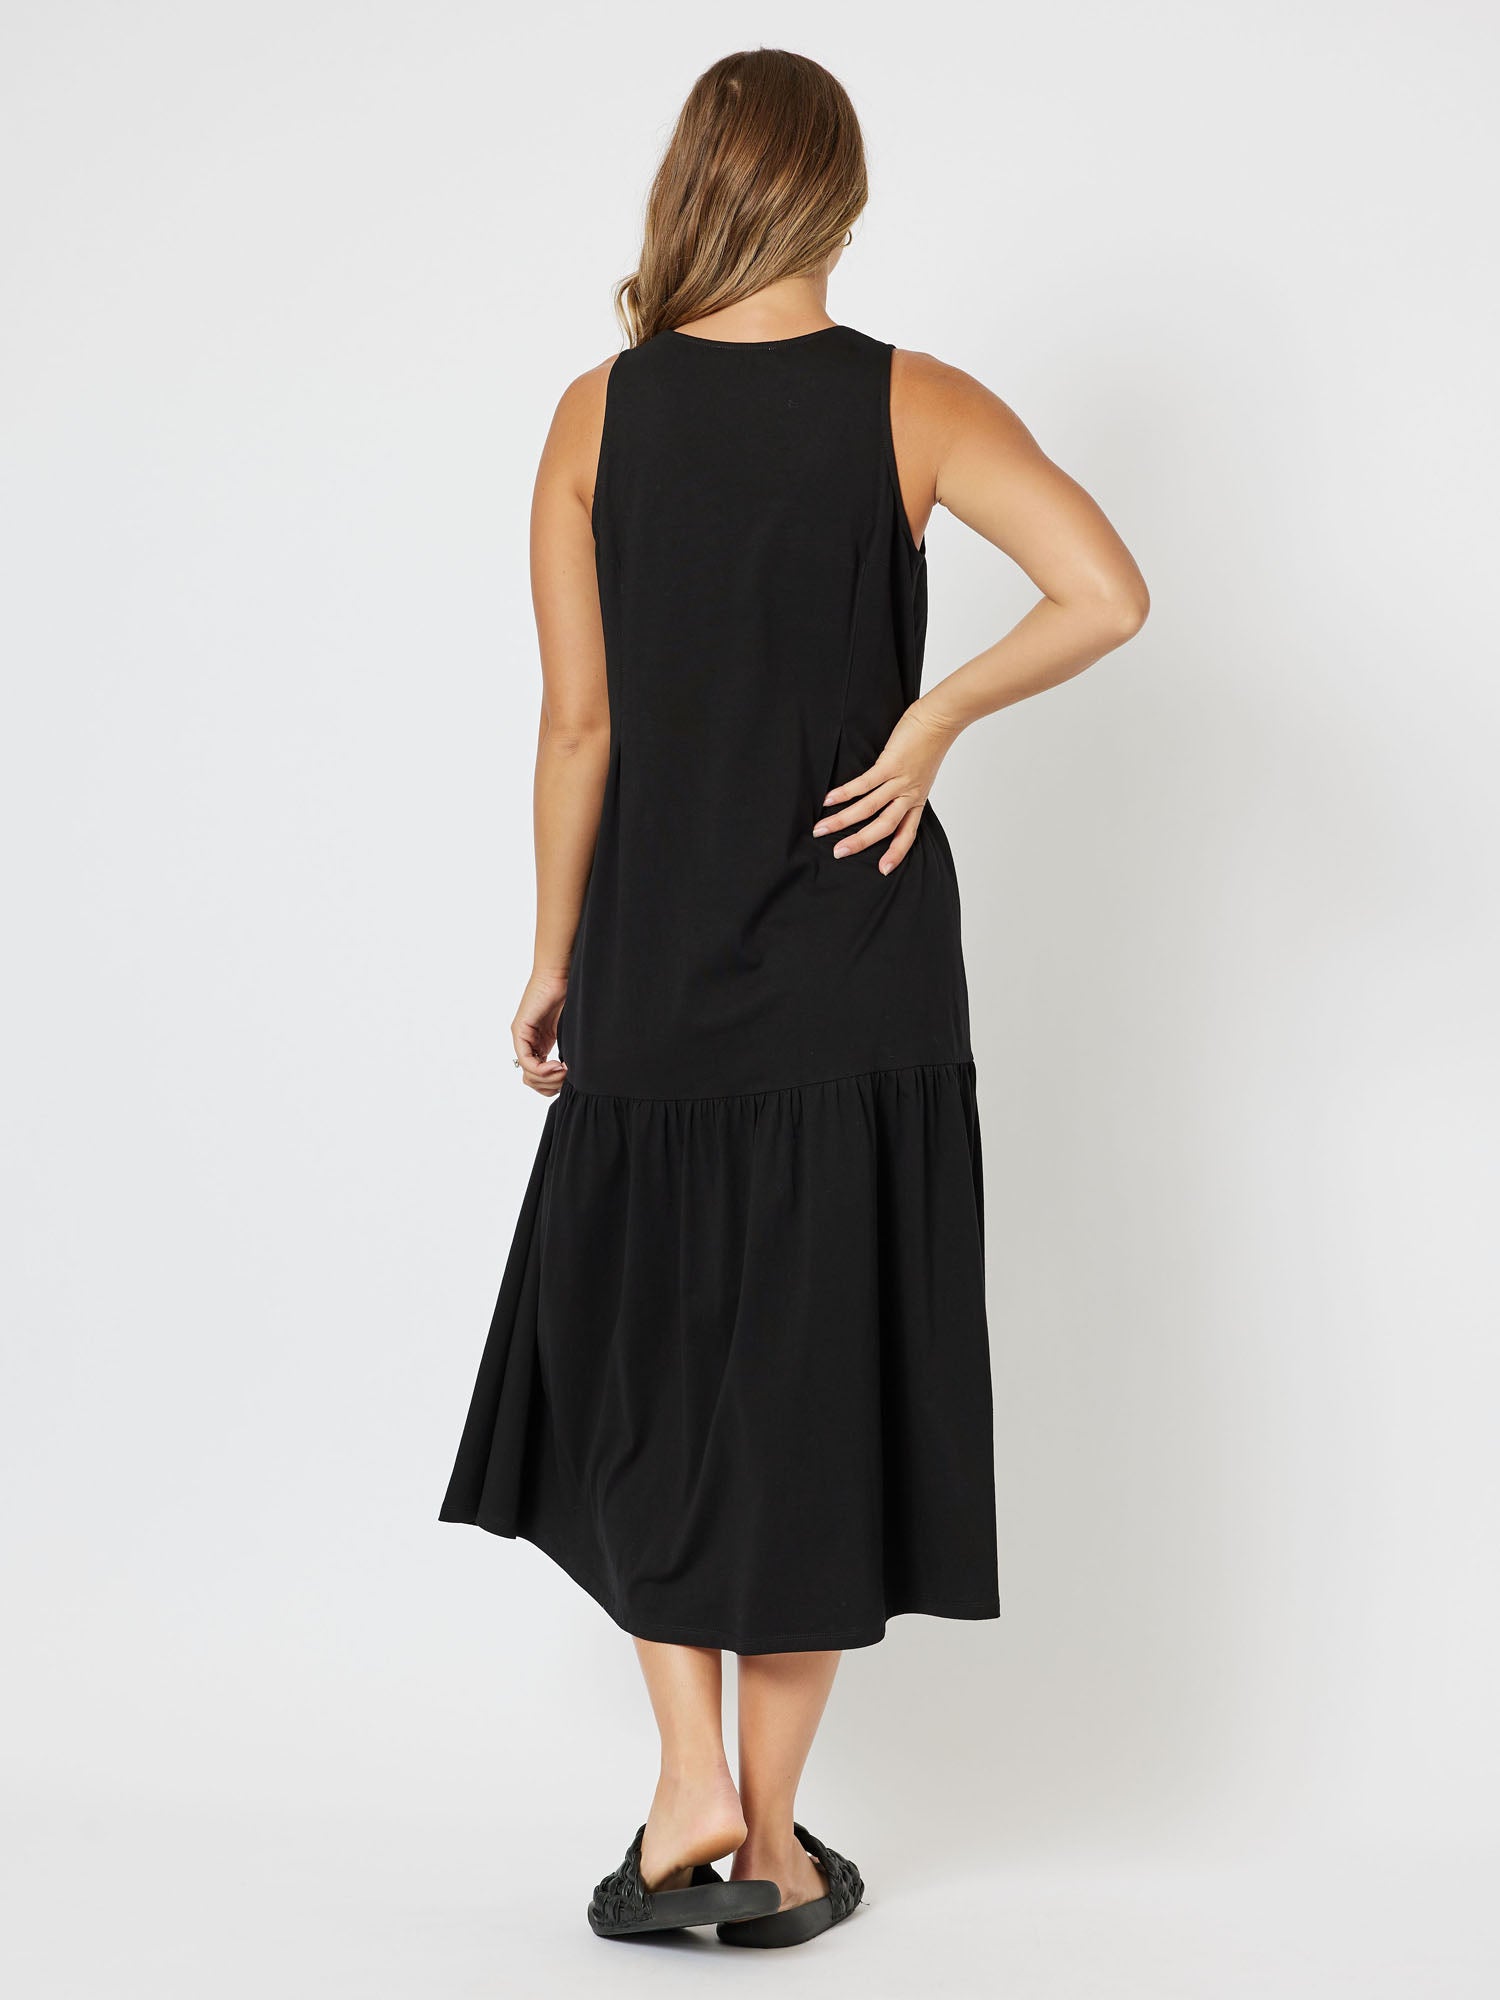 Veuve Jersey Knit Top Vneck Sleeveless Midi Dress - Black